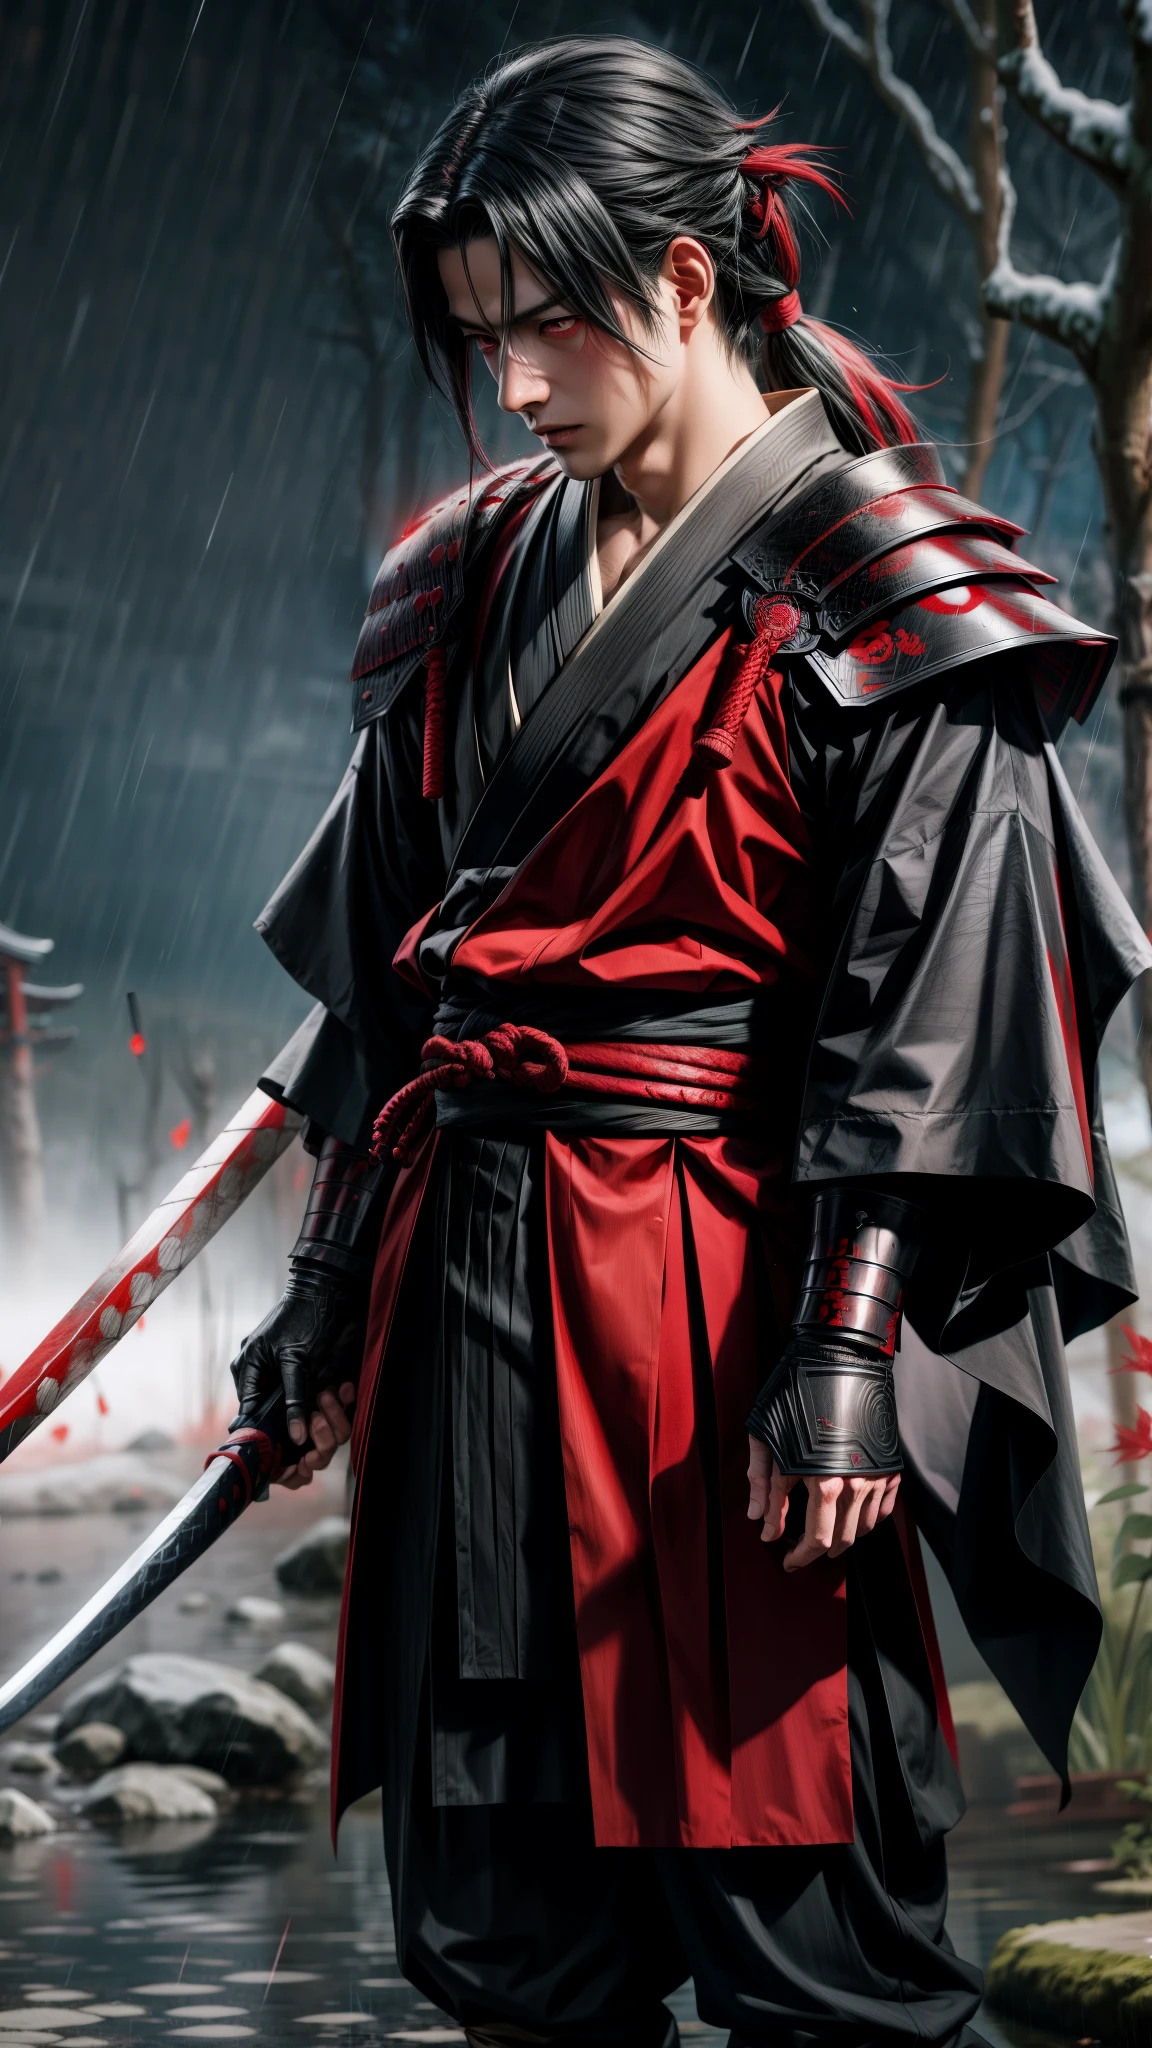 อุจิวะ มาดาระตาแดงพร้อมชุดเกราะซีราห์ครบชุดและซามูไรในมือยืนท่ามกลางสายฝน, แรงบันดาลใจจากคาโน ซันราคุ, แรงบันดาลใจจาก Kanō Hōgai, ซามูไรชาย vagabond, อิทาจิ อุจิฮะ, อิตัตจิ อุจิฮะ, แรงบันดาลใจจาก Tōshūsai Sharaku, อาคัตสึกิ อากิระ, ซามูไรในเมือง, จาก kenshin, มาดาระอุจิวะ สมจริงสุดๆ